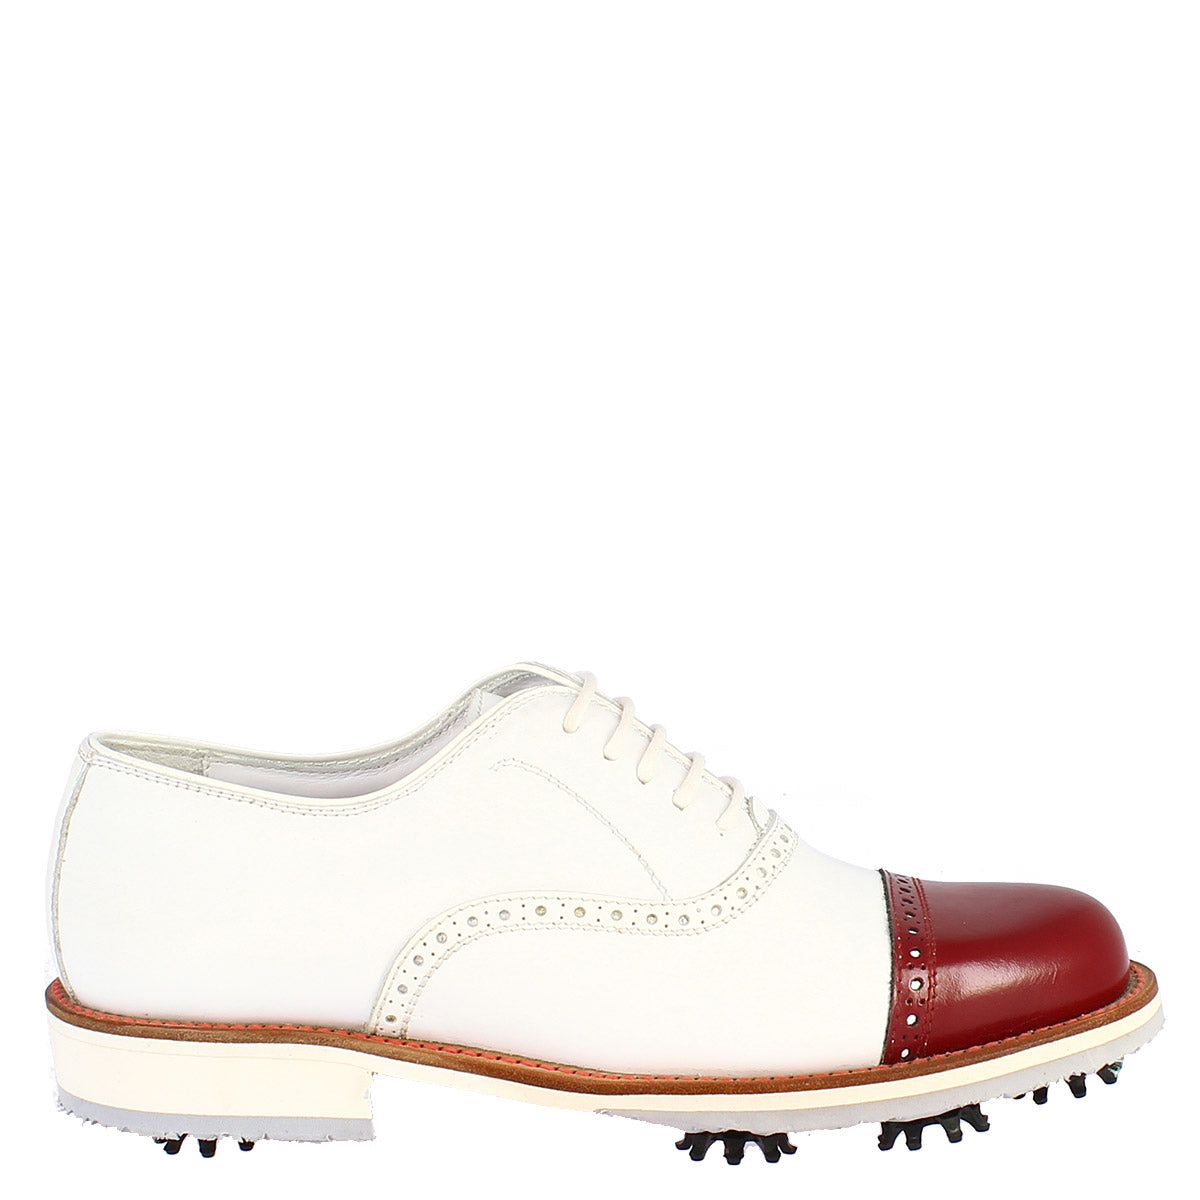 Handgefertigte Herren-Golfschuhe aus weißem Leder mit roter Zehenkappe